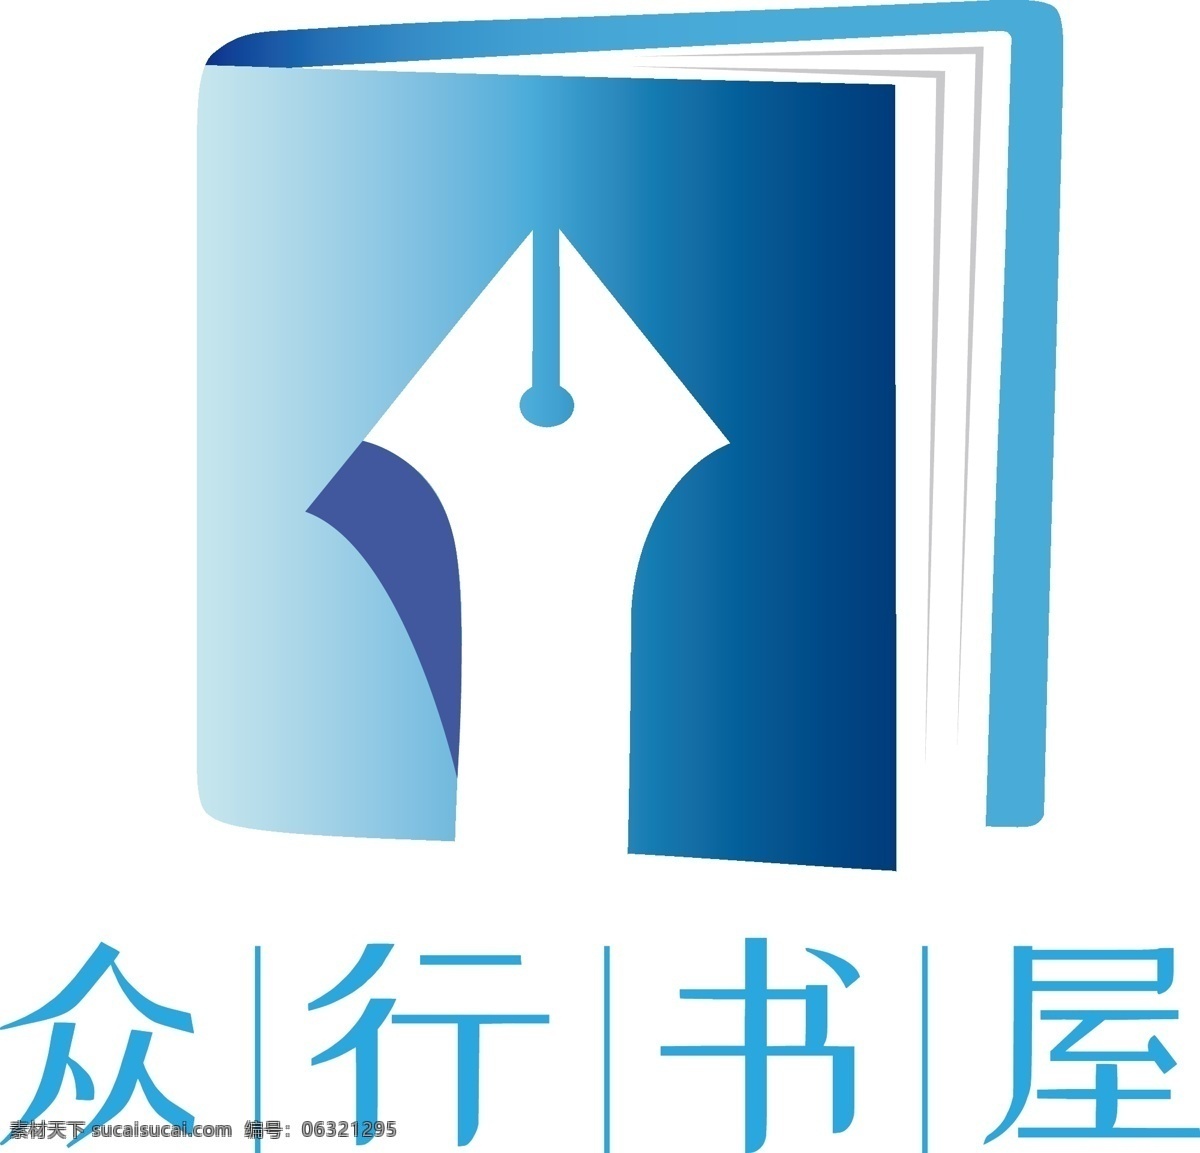 书店logo 众行书屋 书本 商标 logo logo设计